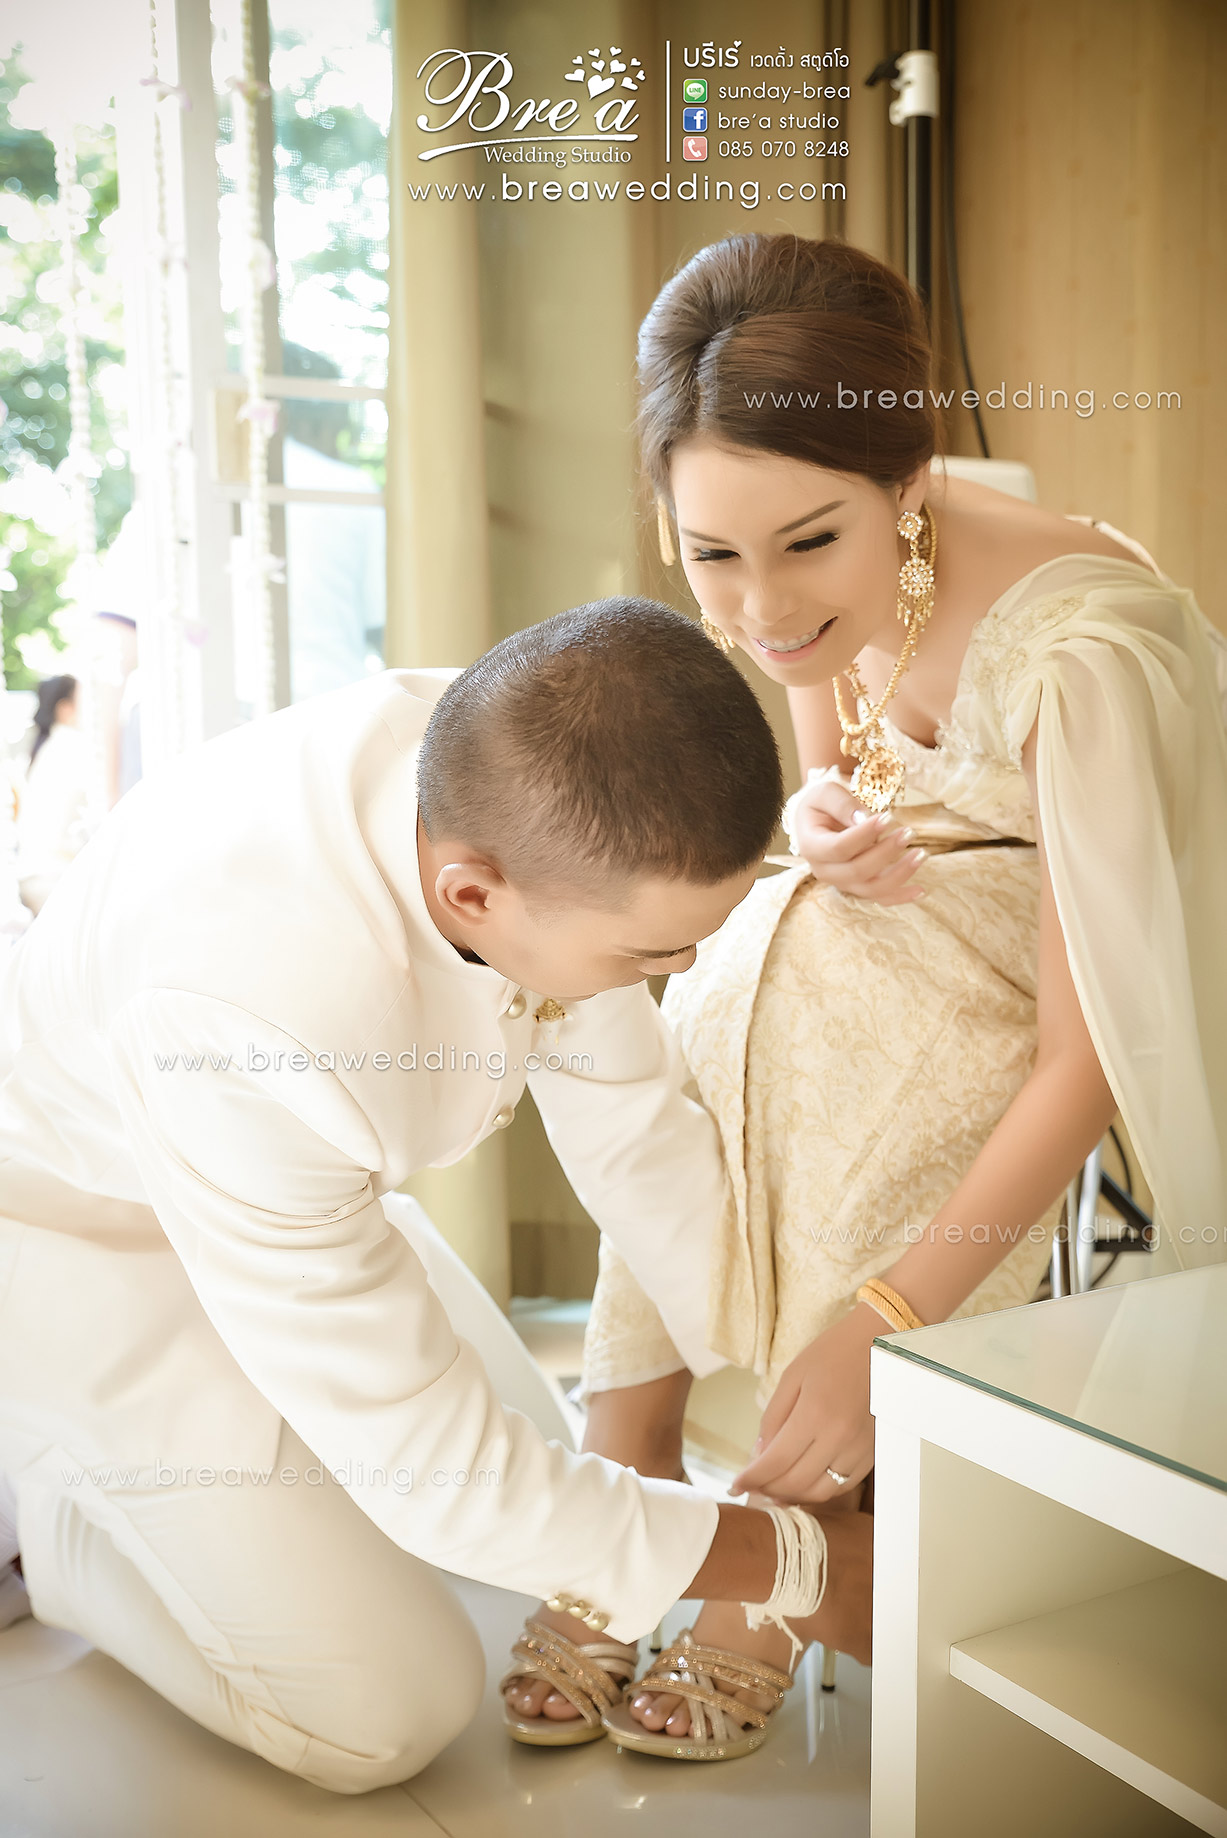 ถ่ายรูปแต่งงาน นนทบุรี บางบัวทอง